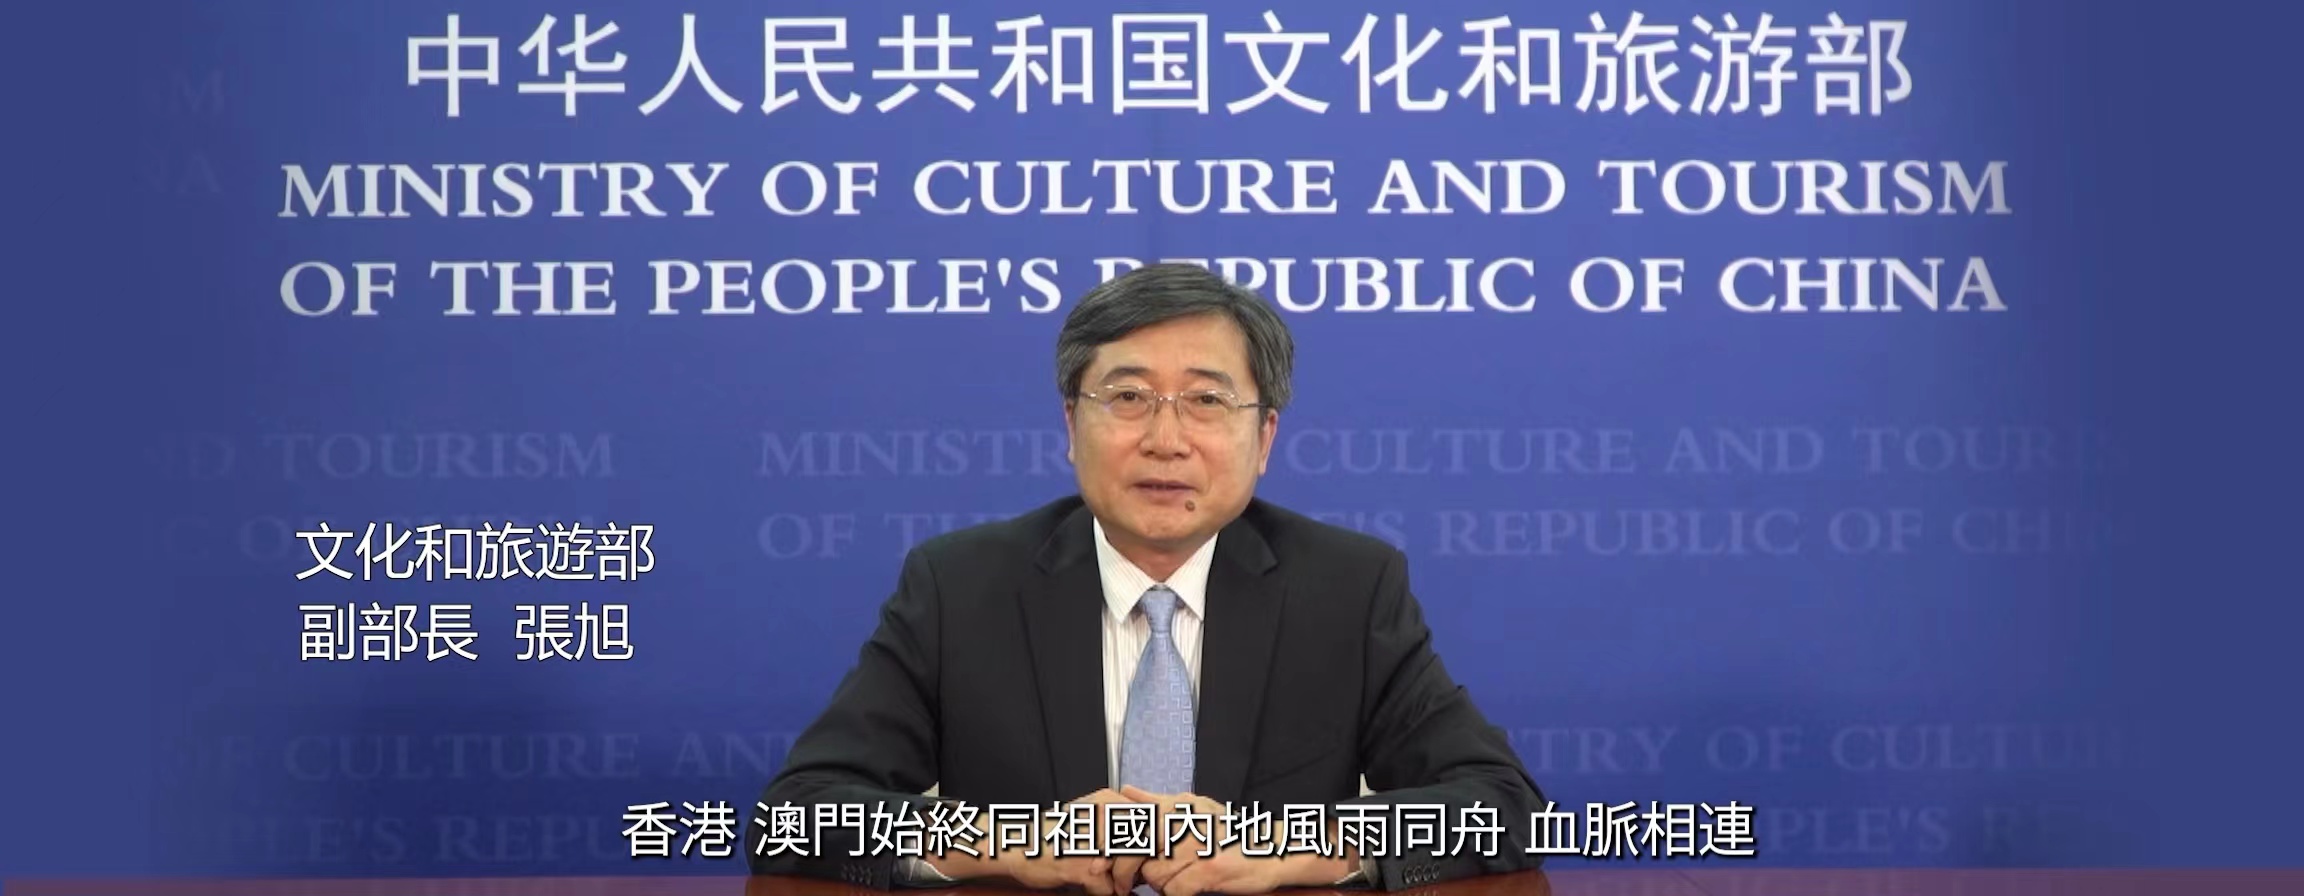 欧阳坚副部长出席《中国文化产业年鉴》首发式